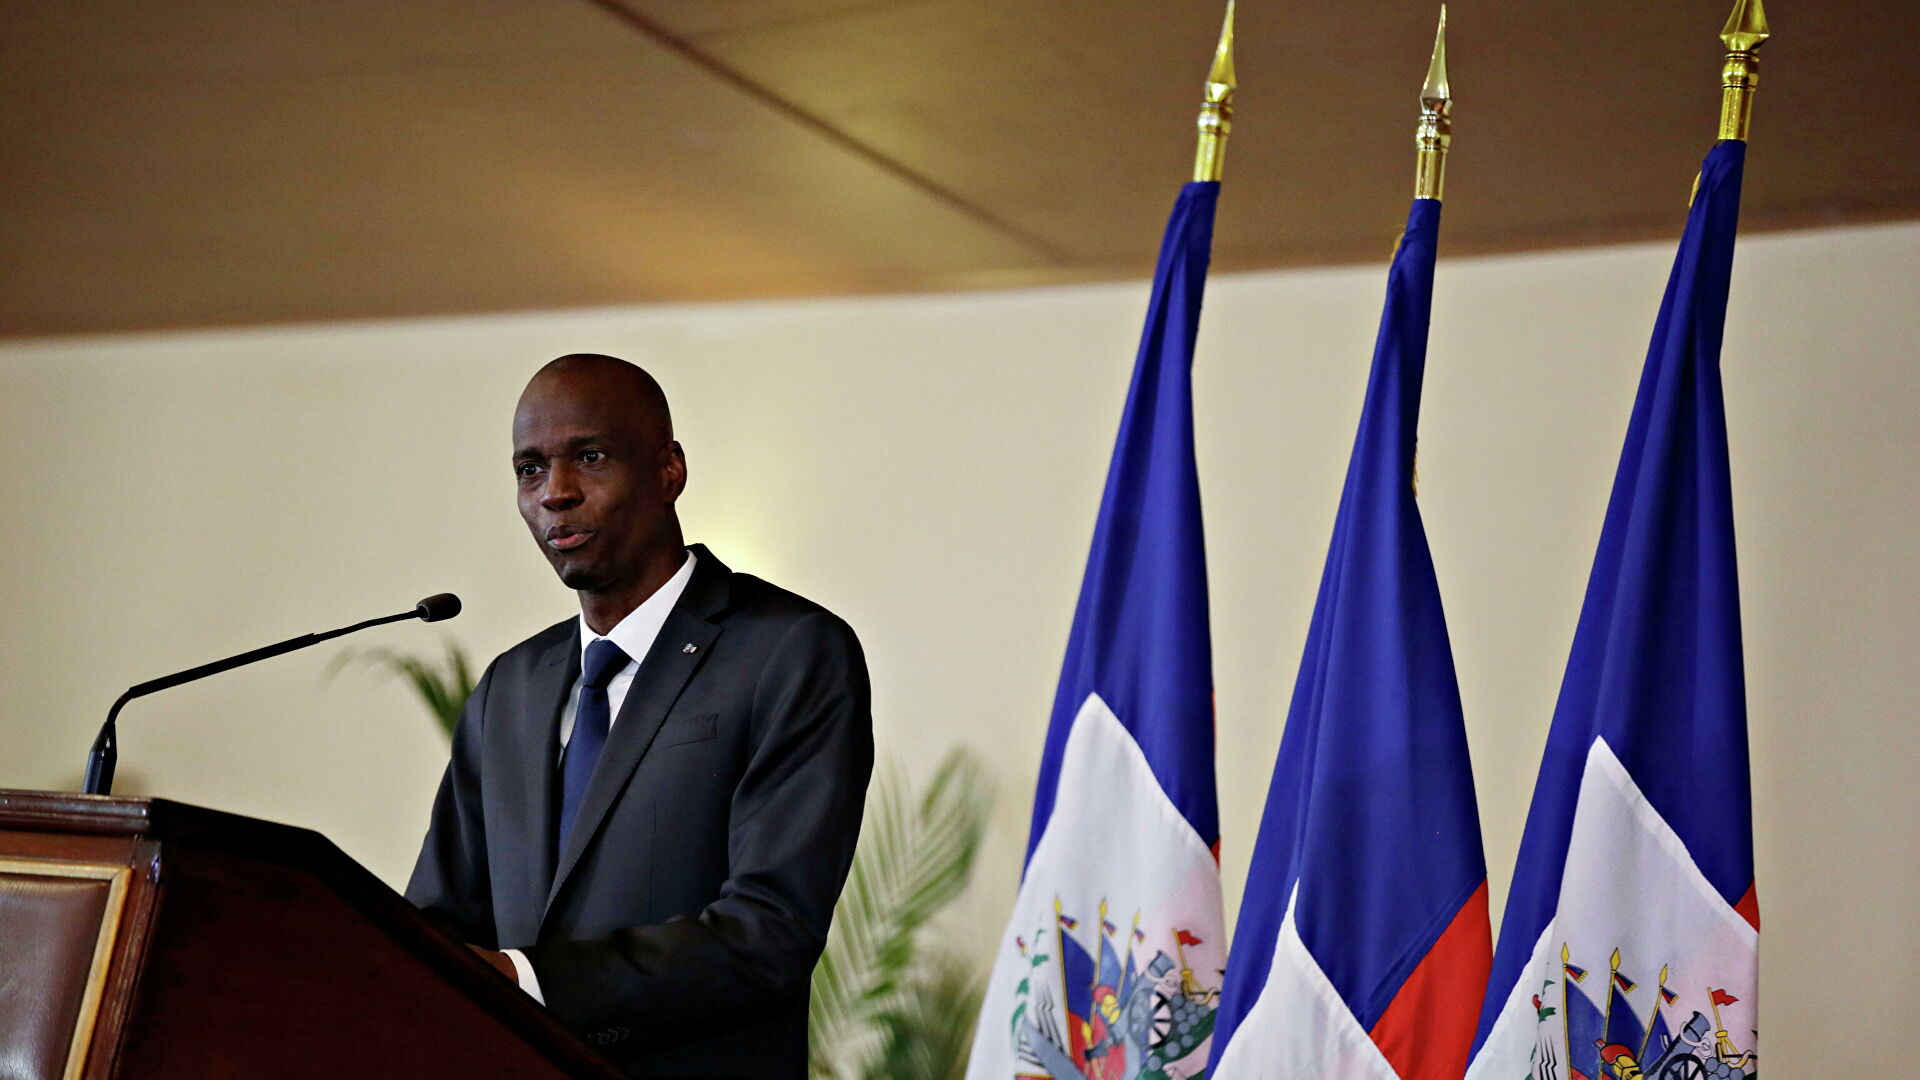 Llamada de radio reveló plan de asesinato presidencial en Haití